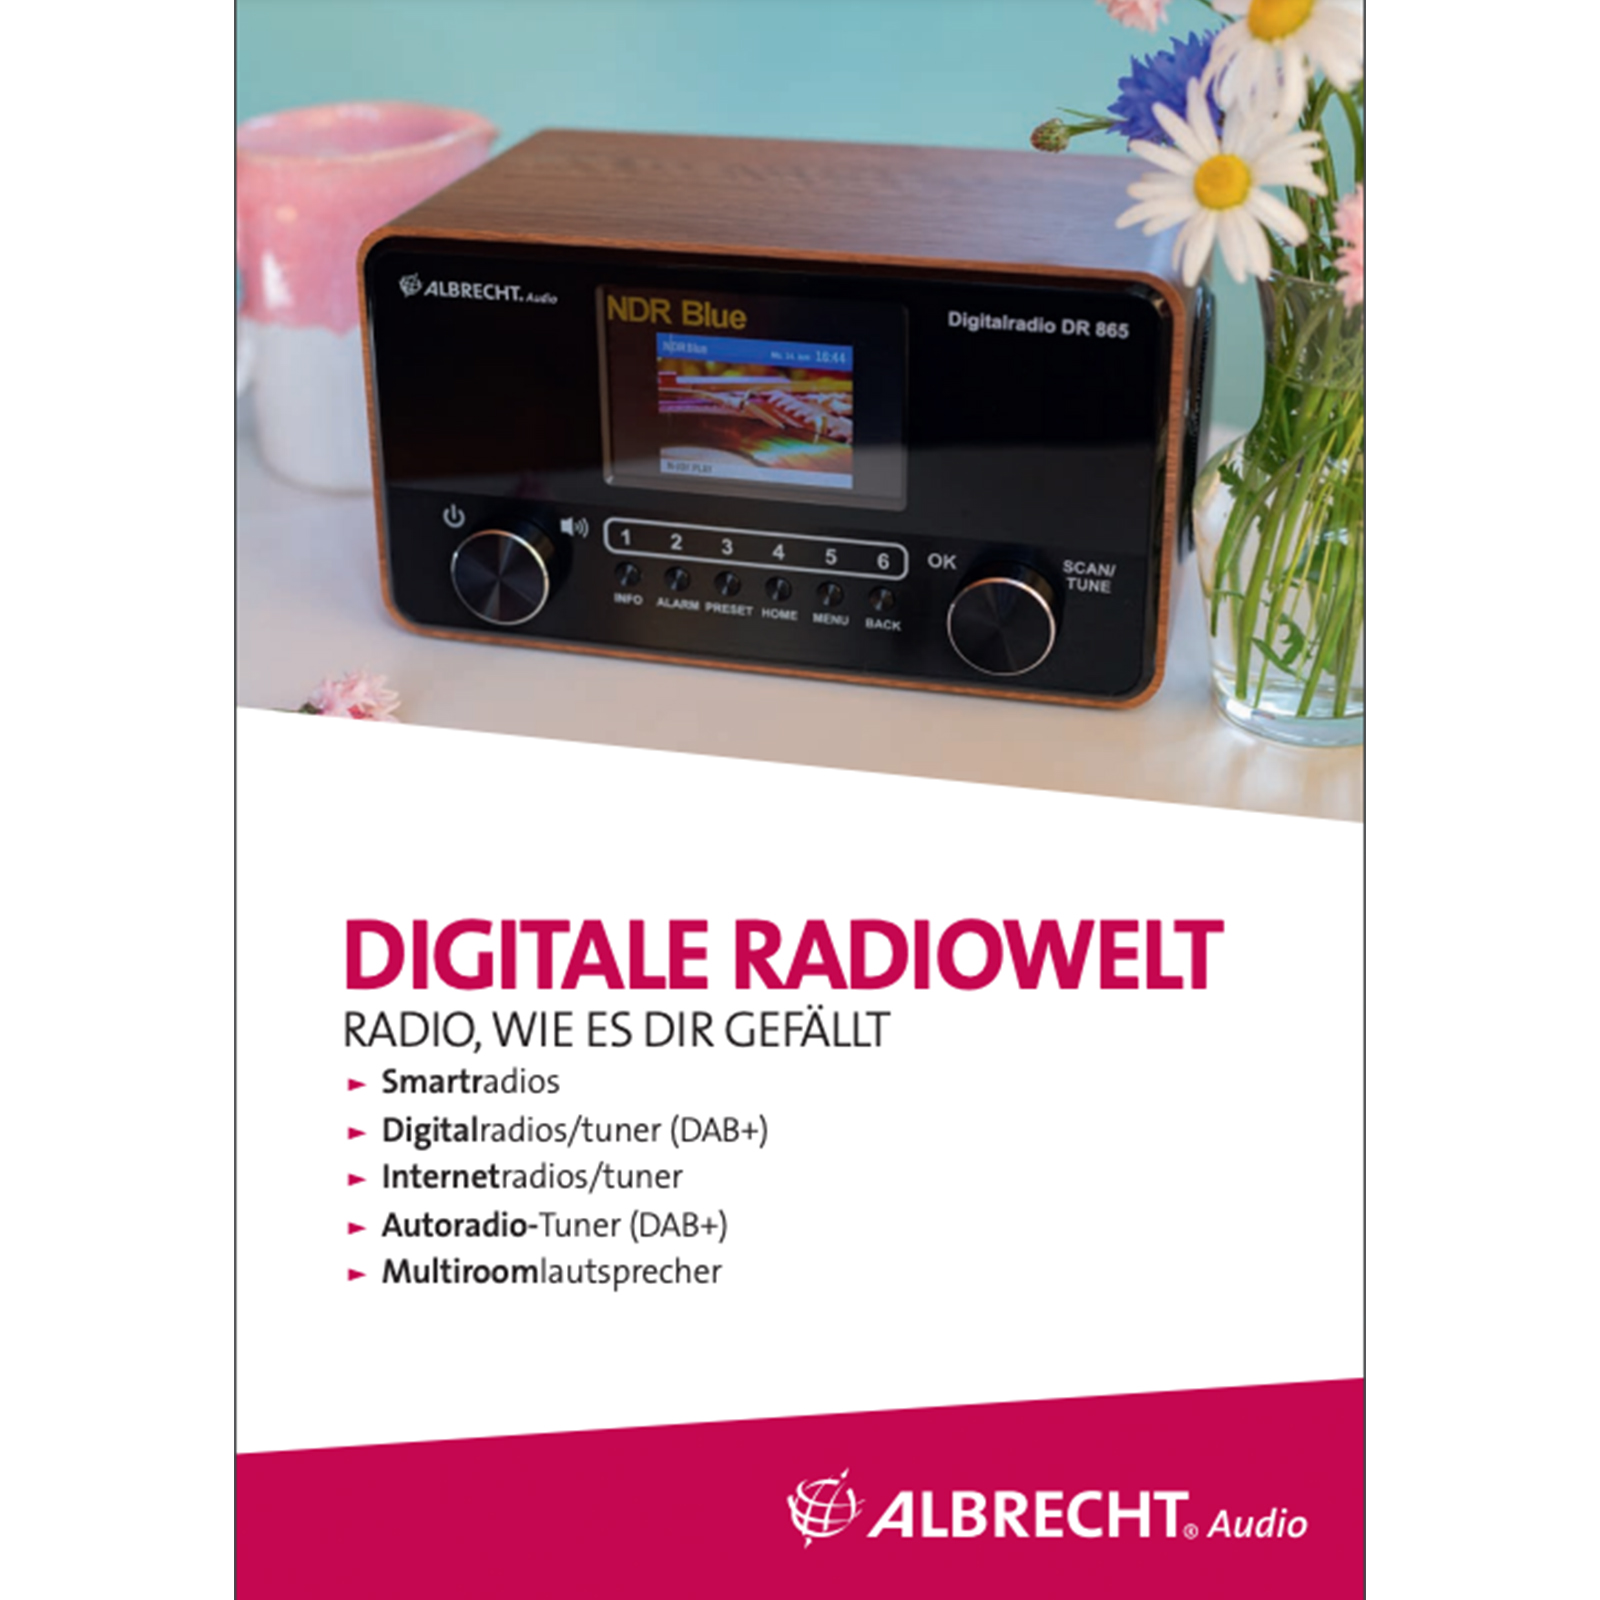 Albrecht Katalog Digital World, deutsch_4032661090904_ALBRECHT_#1